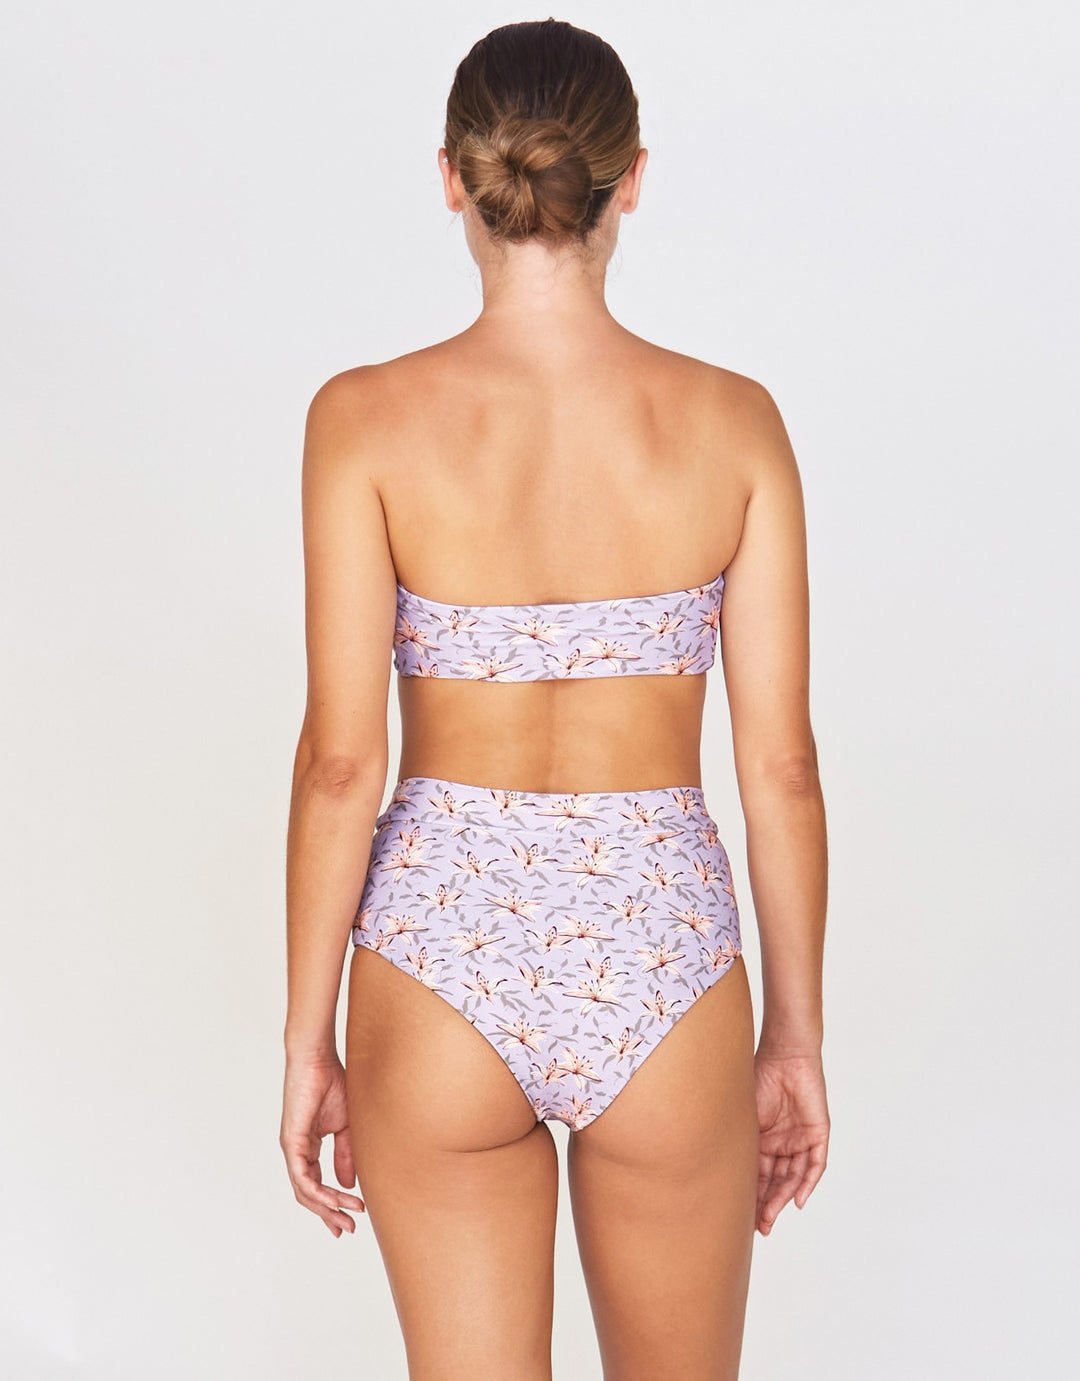 Acacia Swimwear Halia Bandeau Bikini Top in Lily